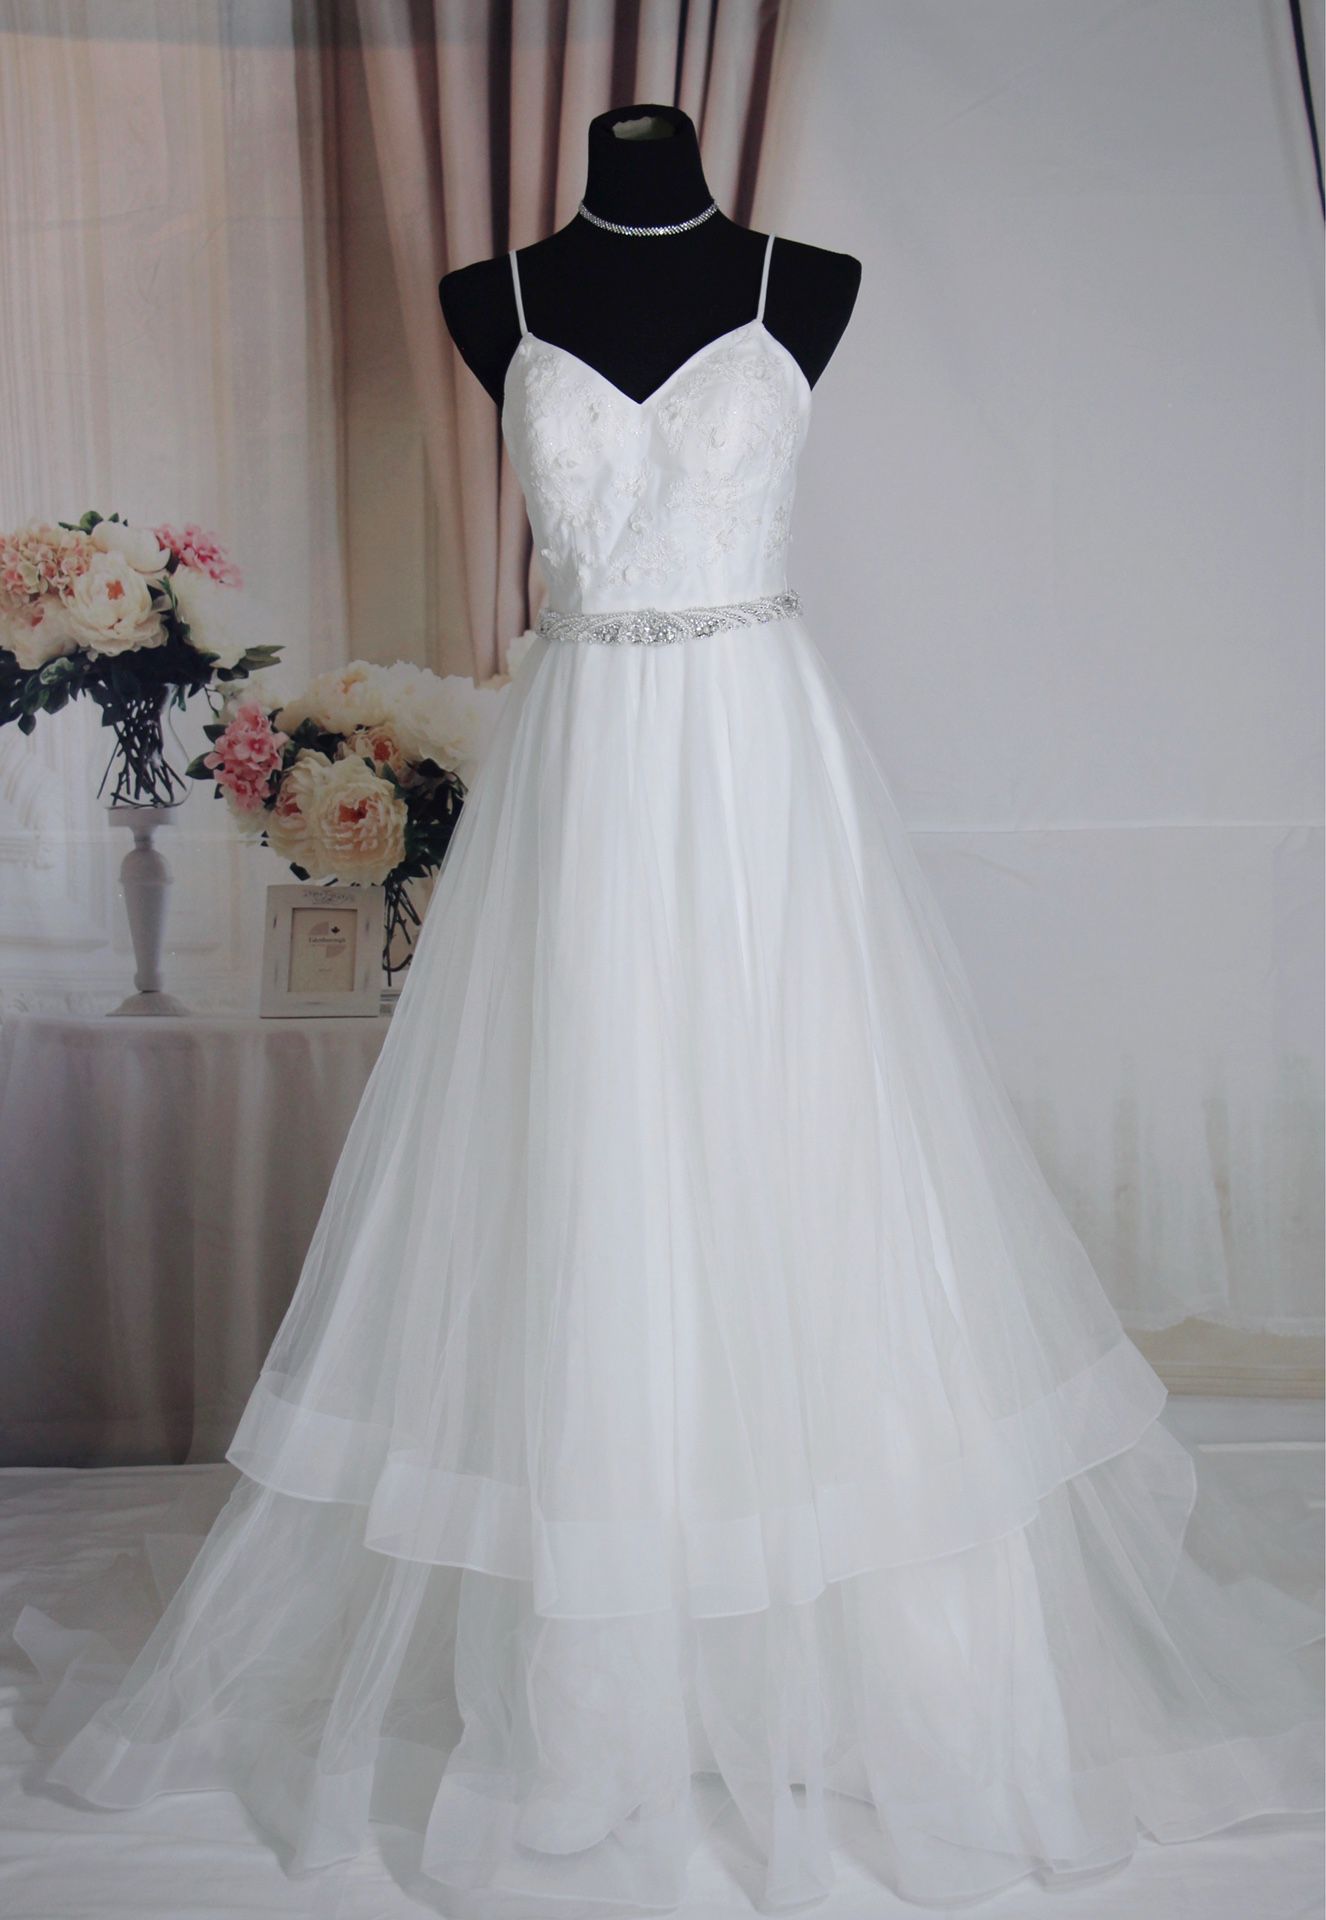 White boho tulle wedding dress, size 2, David’s Bridal